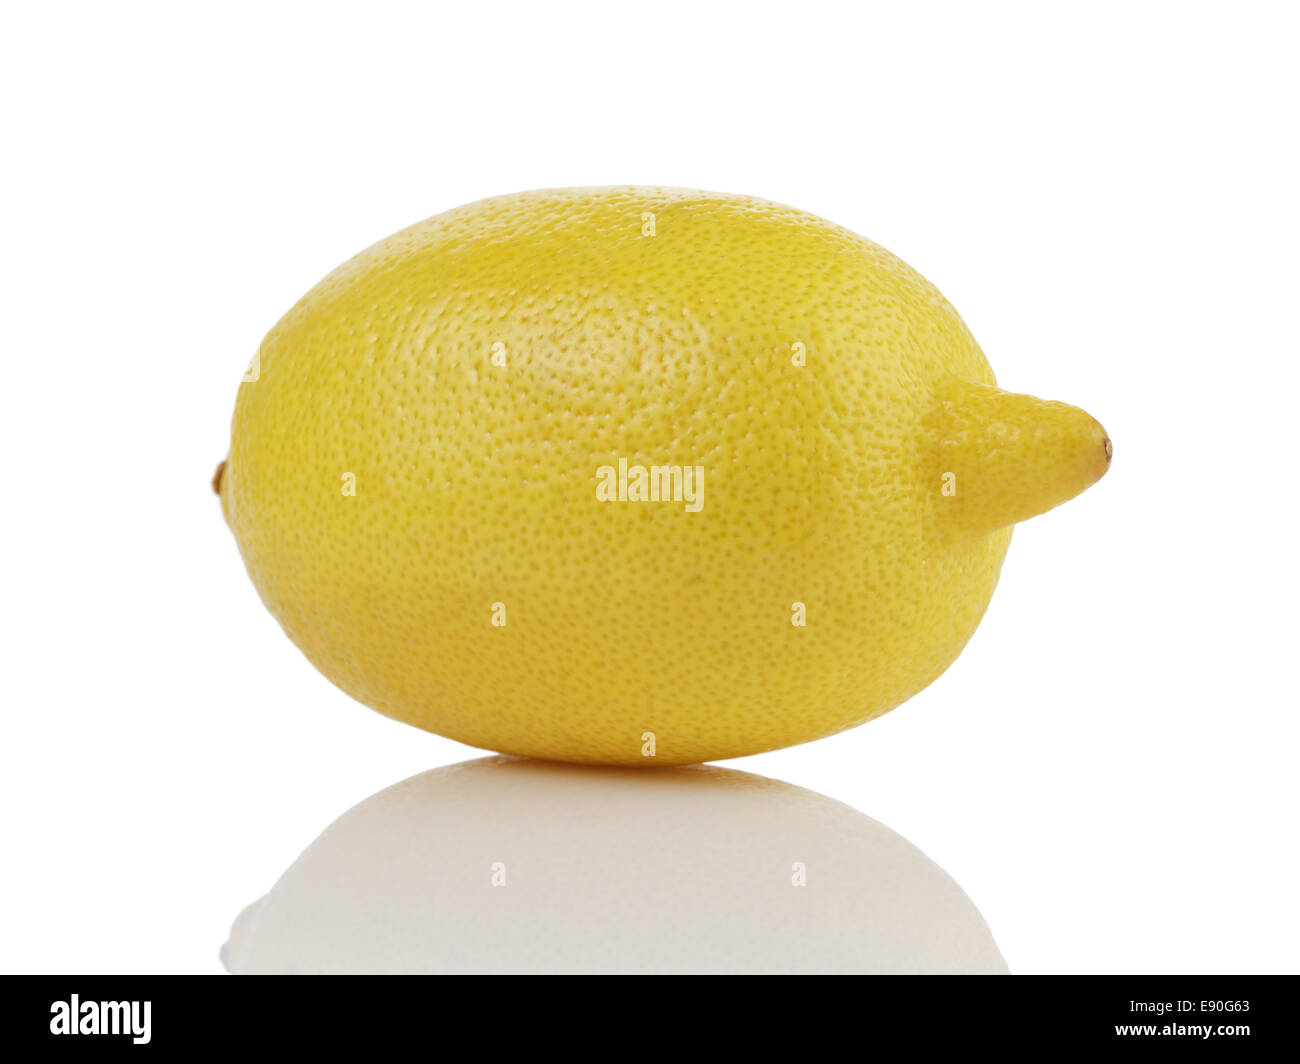 Tutto unico mature limone,isolato su bianco con la riflessione Foto Stock